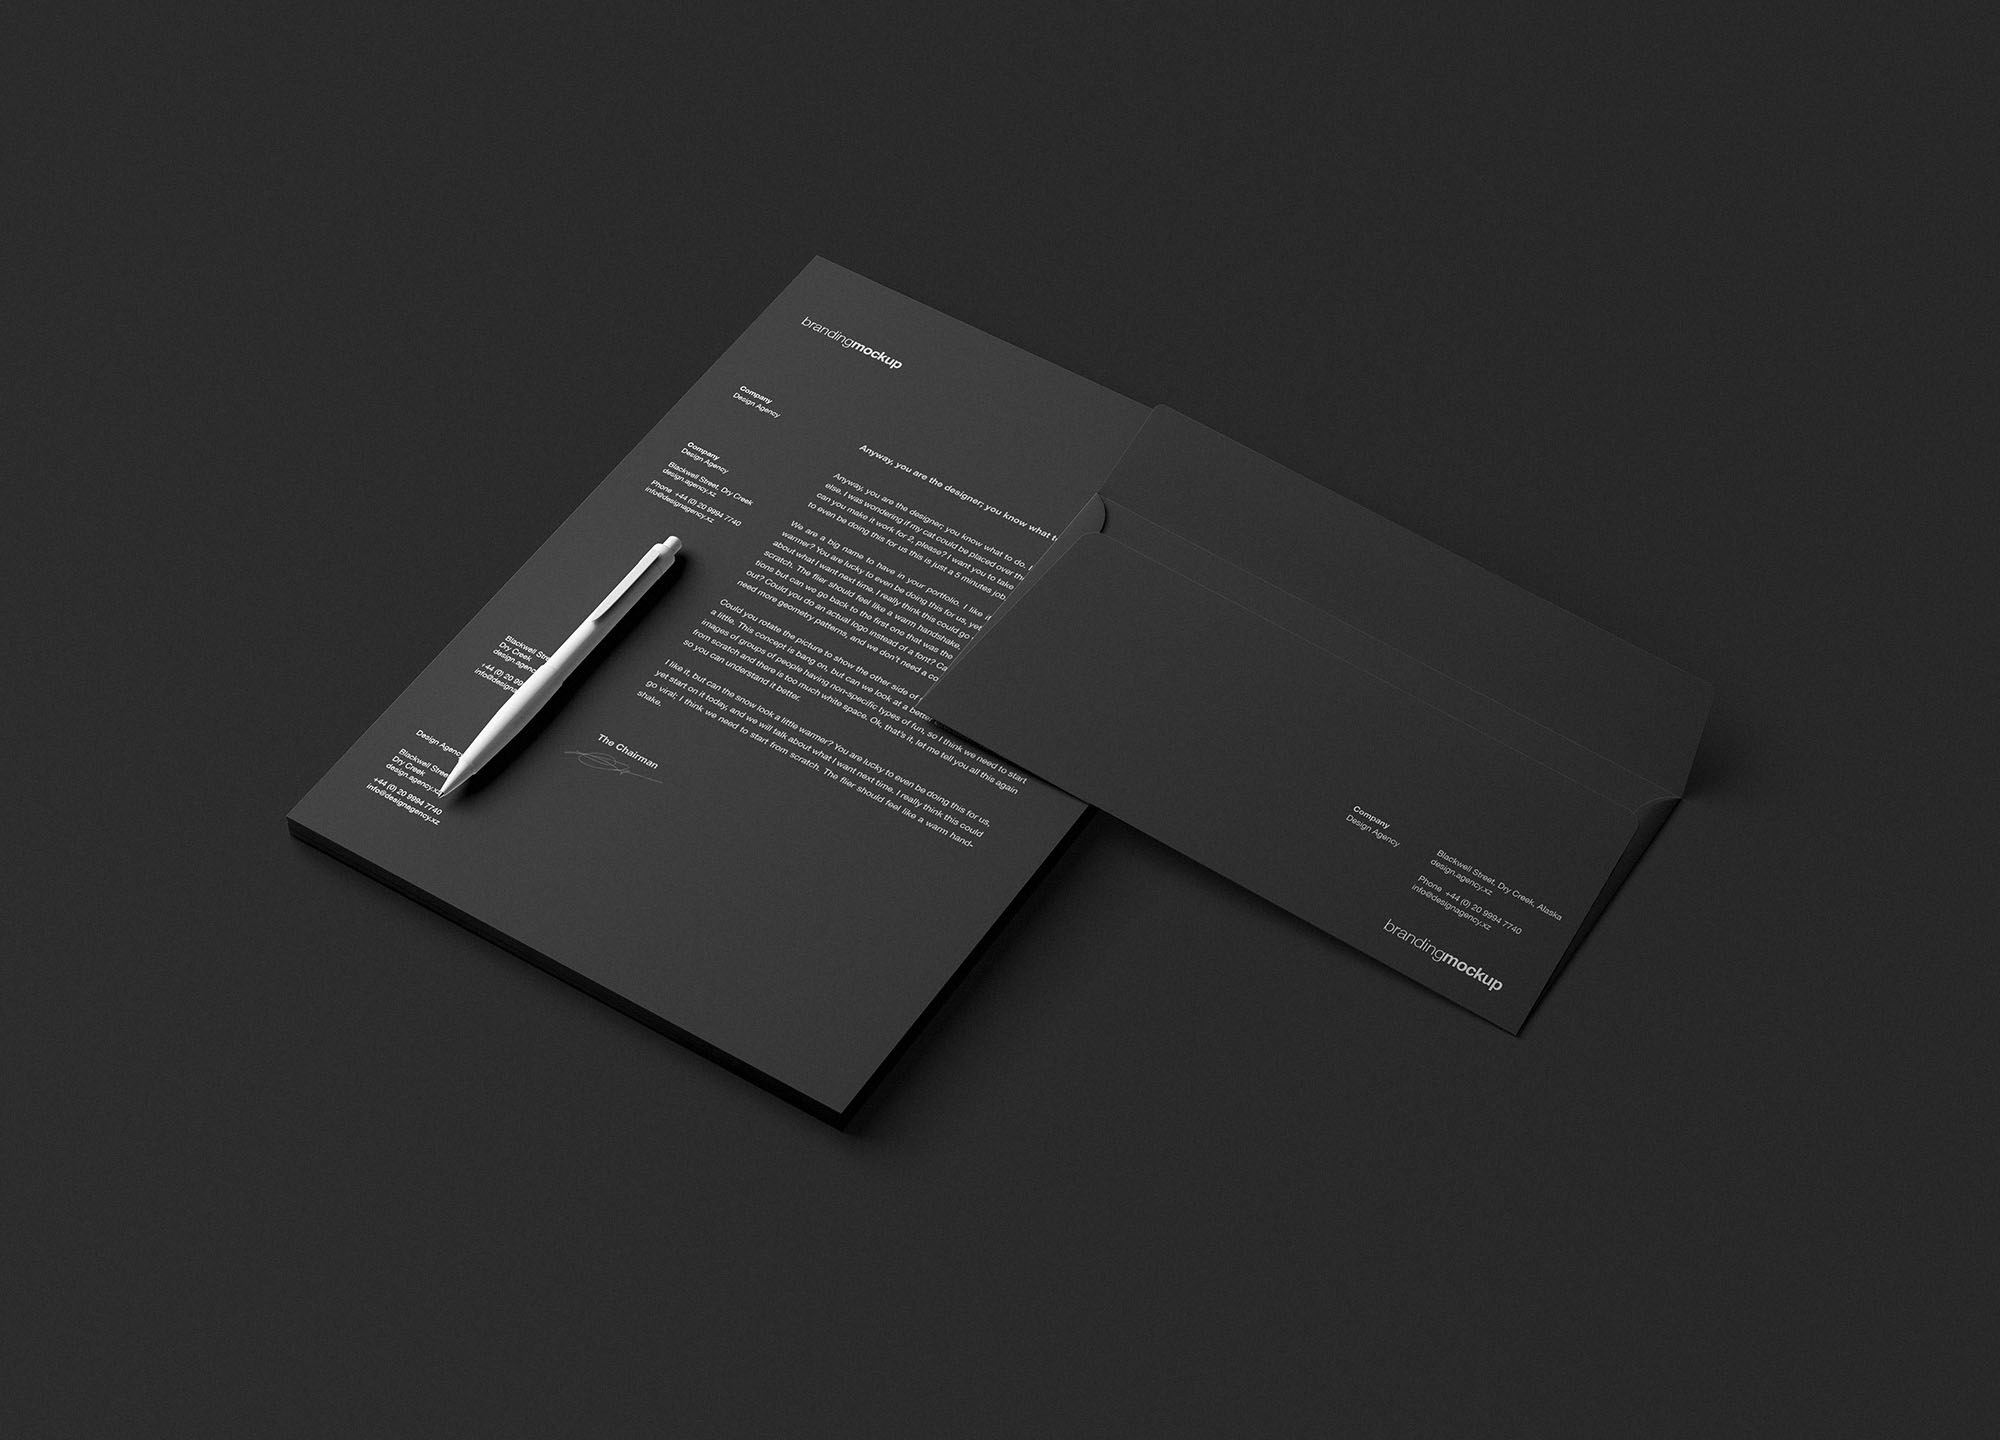 信笺和信封设计品牌样机PSD模板 Letterhead and Envelope Branding Mockup (PSD)插图(1)